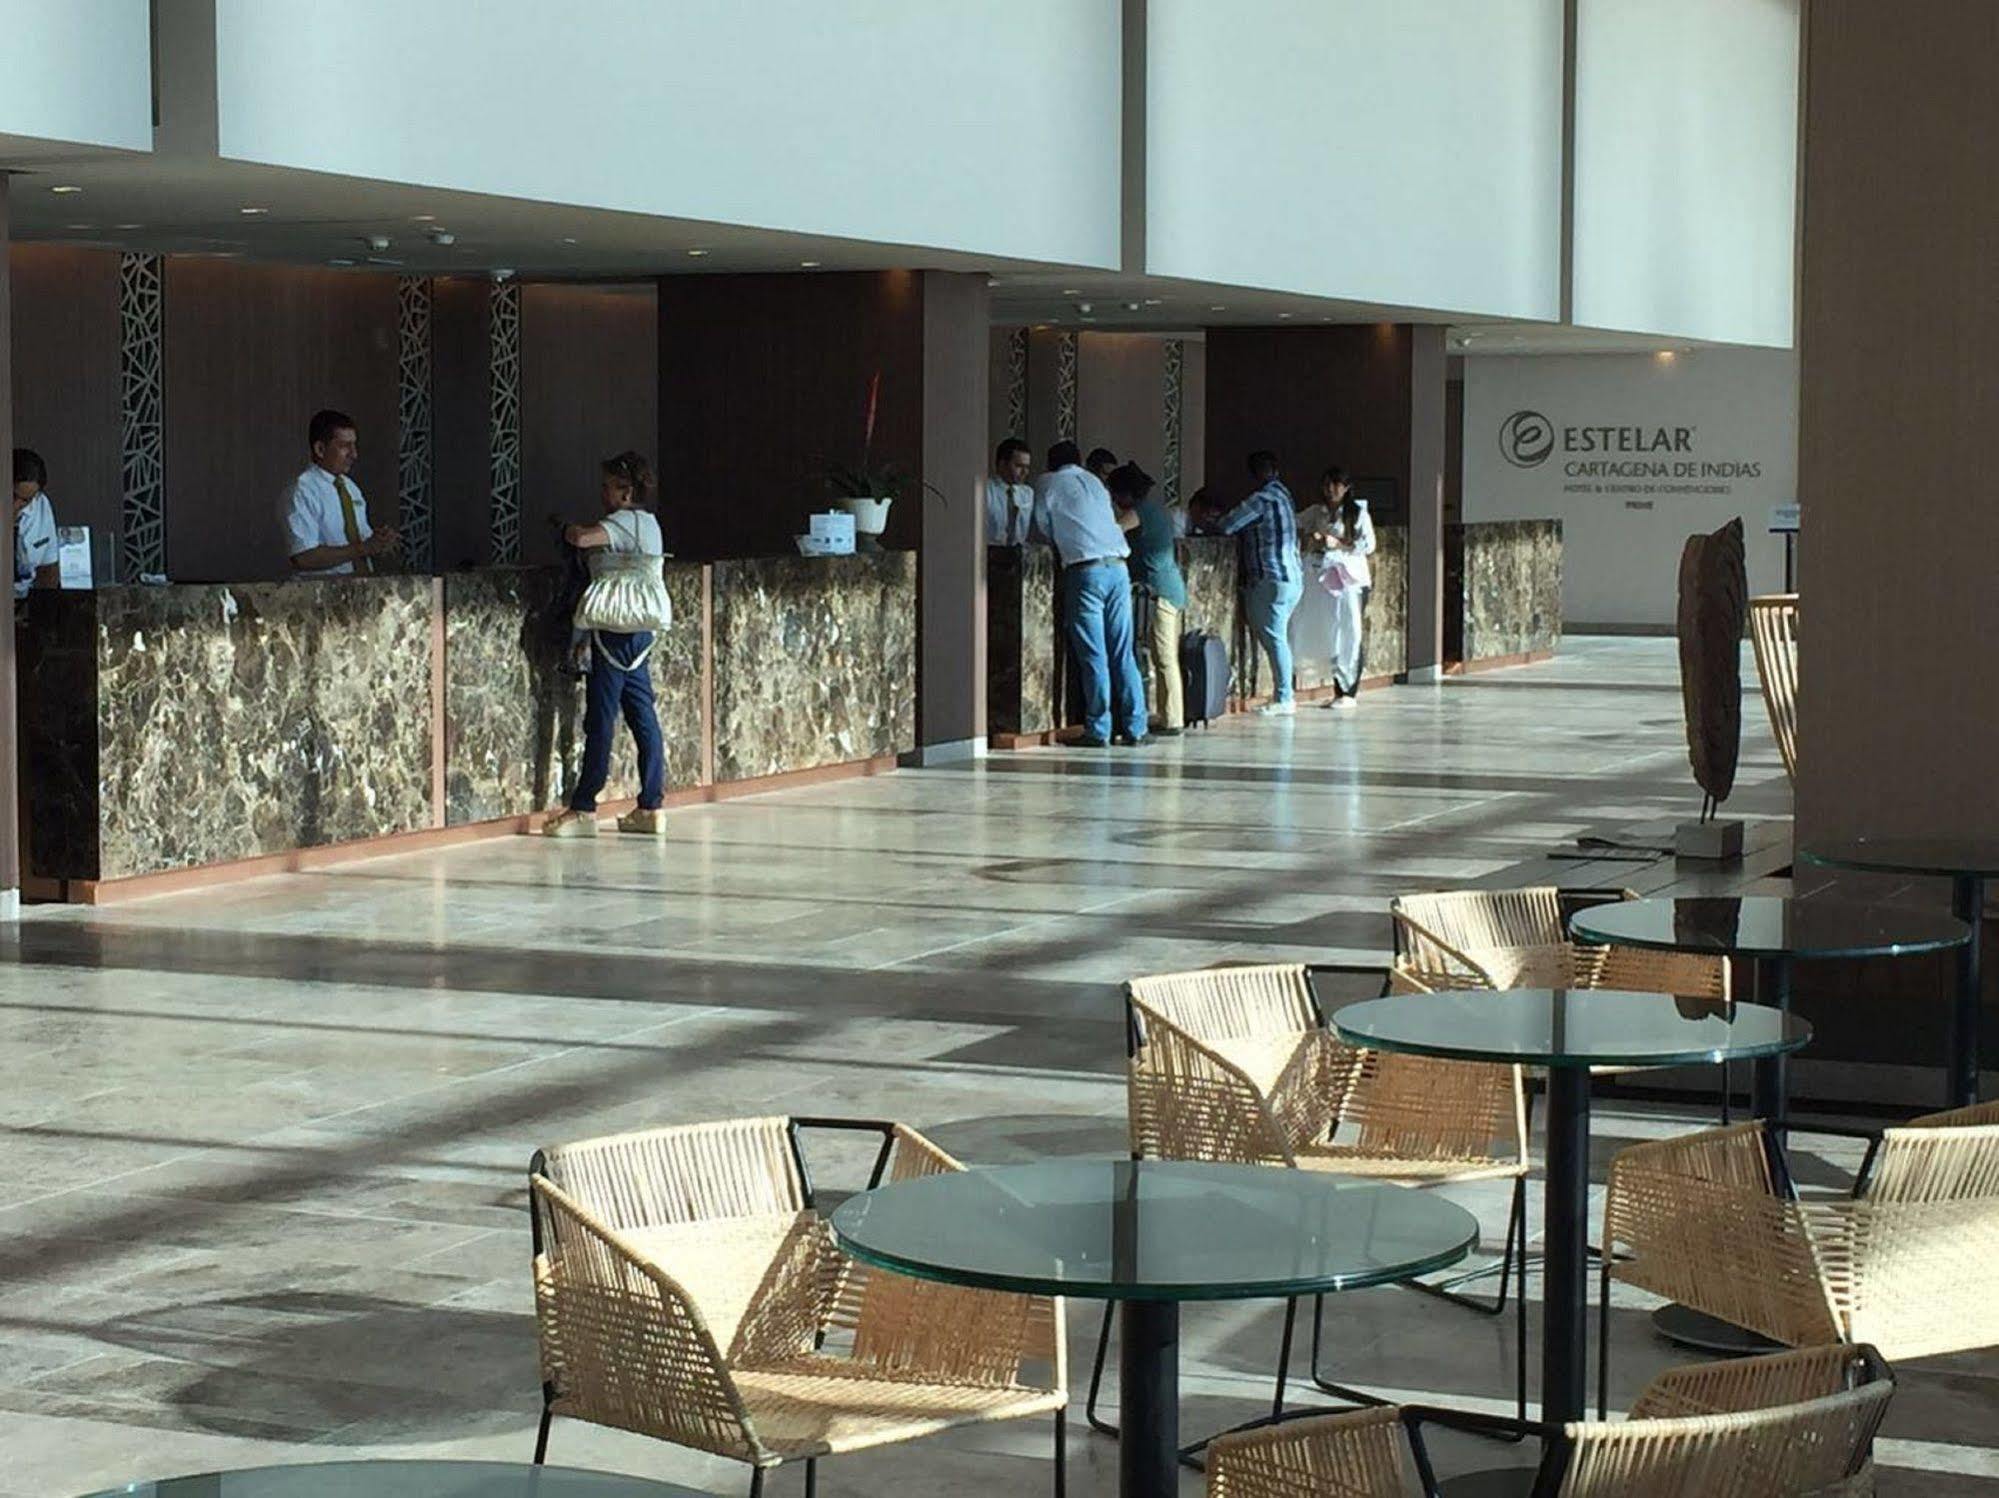 Estelar Cartagena De Indias Hotel Y Centro De Convenciones المظهر الخارجي الصورة